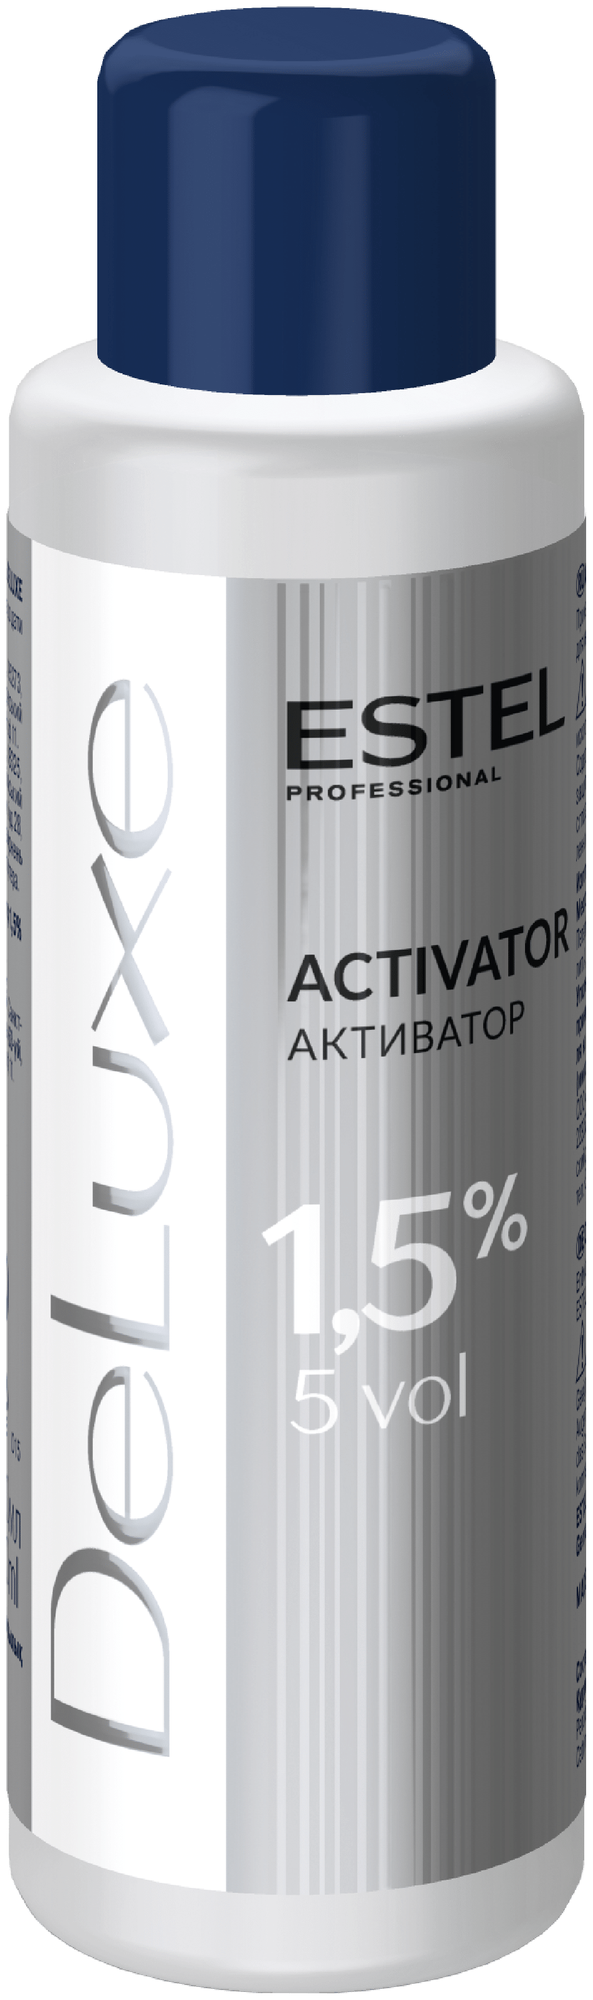 Estel Активатор 1,5%, 1000 мл (Estel, De Luxe) - фото №2